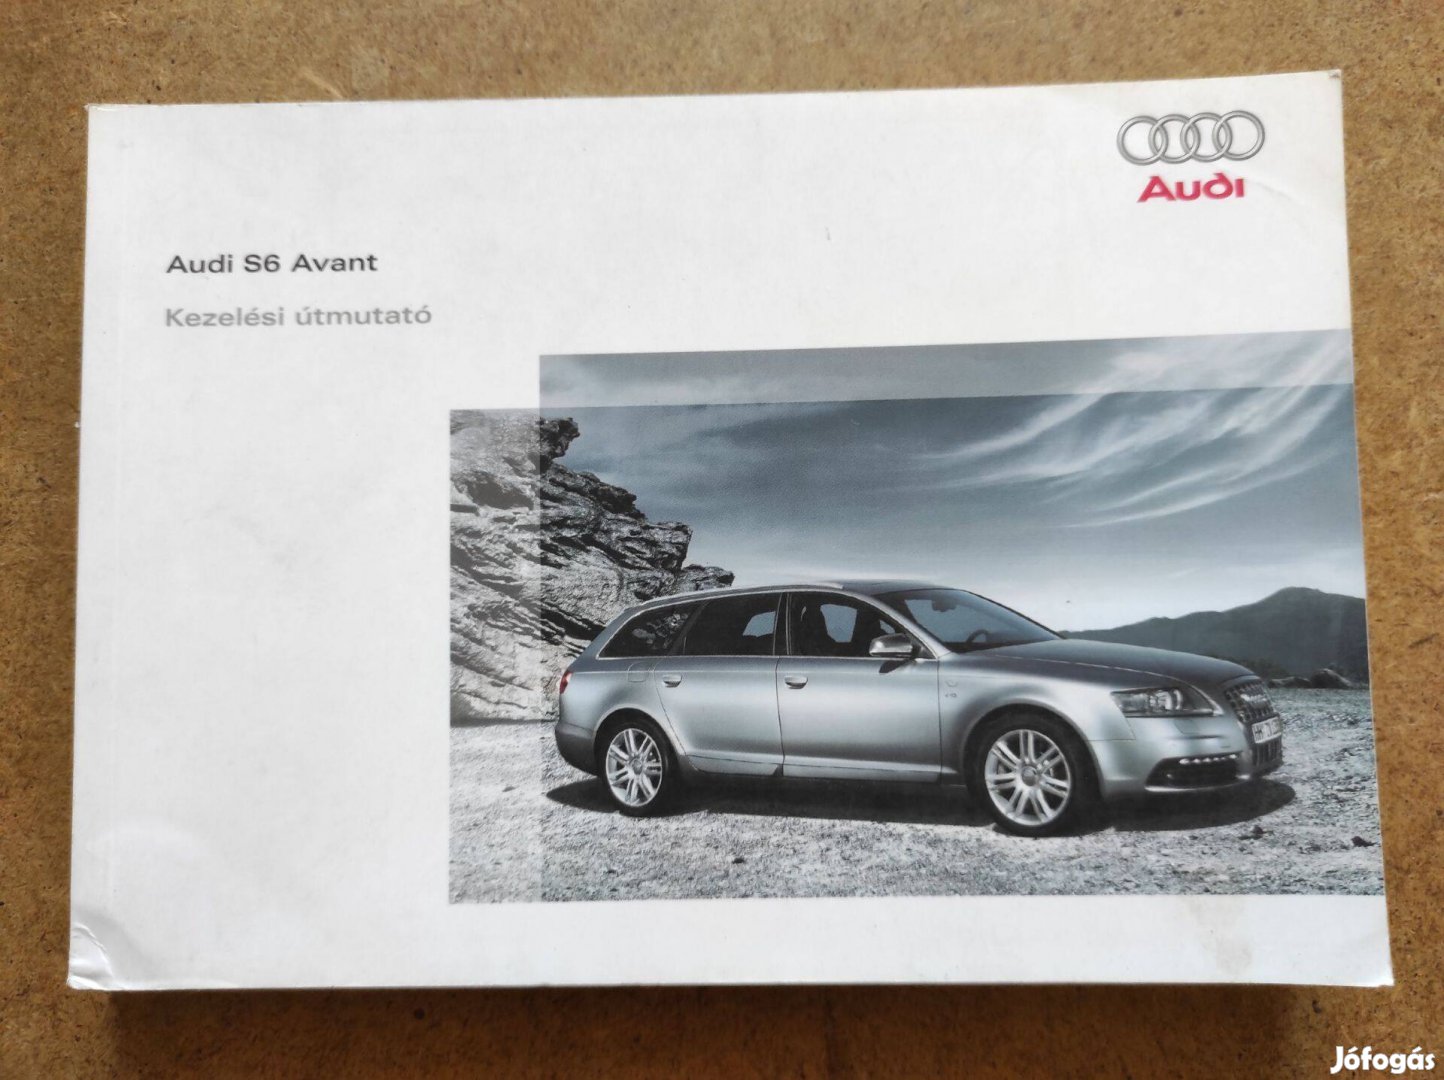 Audi S6 Avant kezelési utasítás. 2007.05-